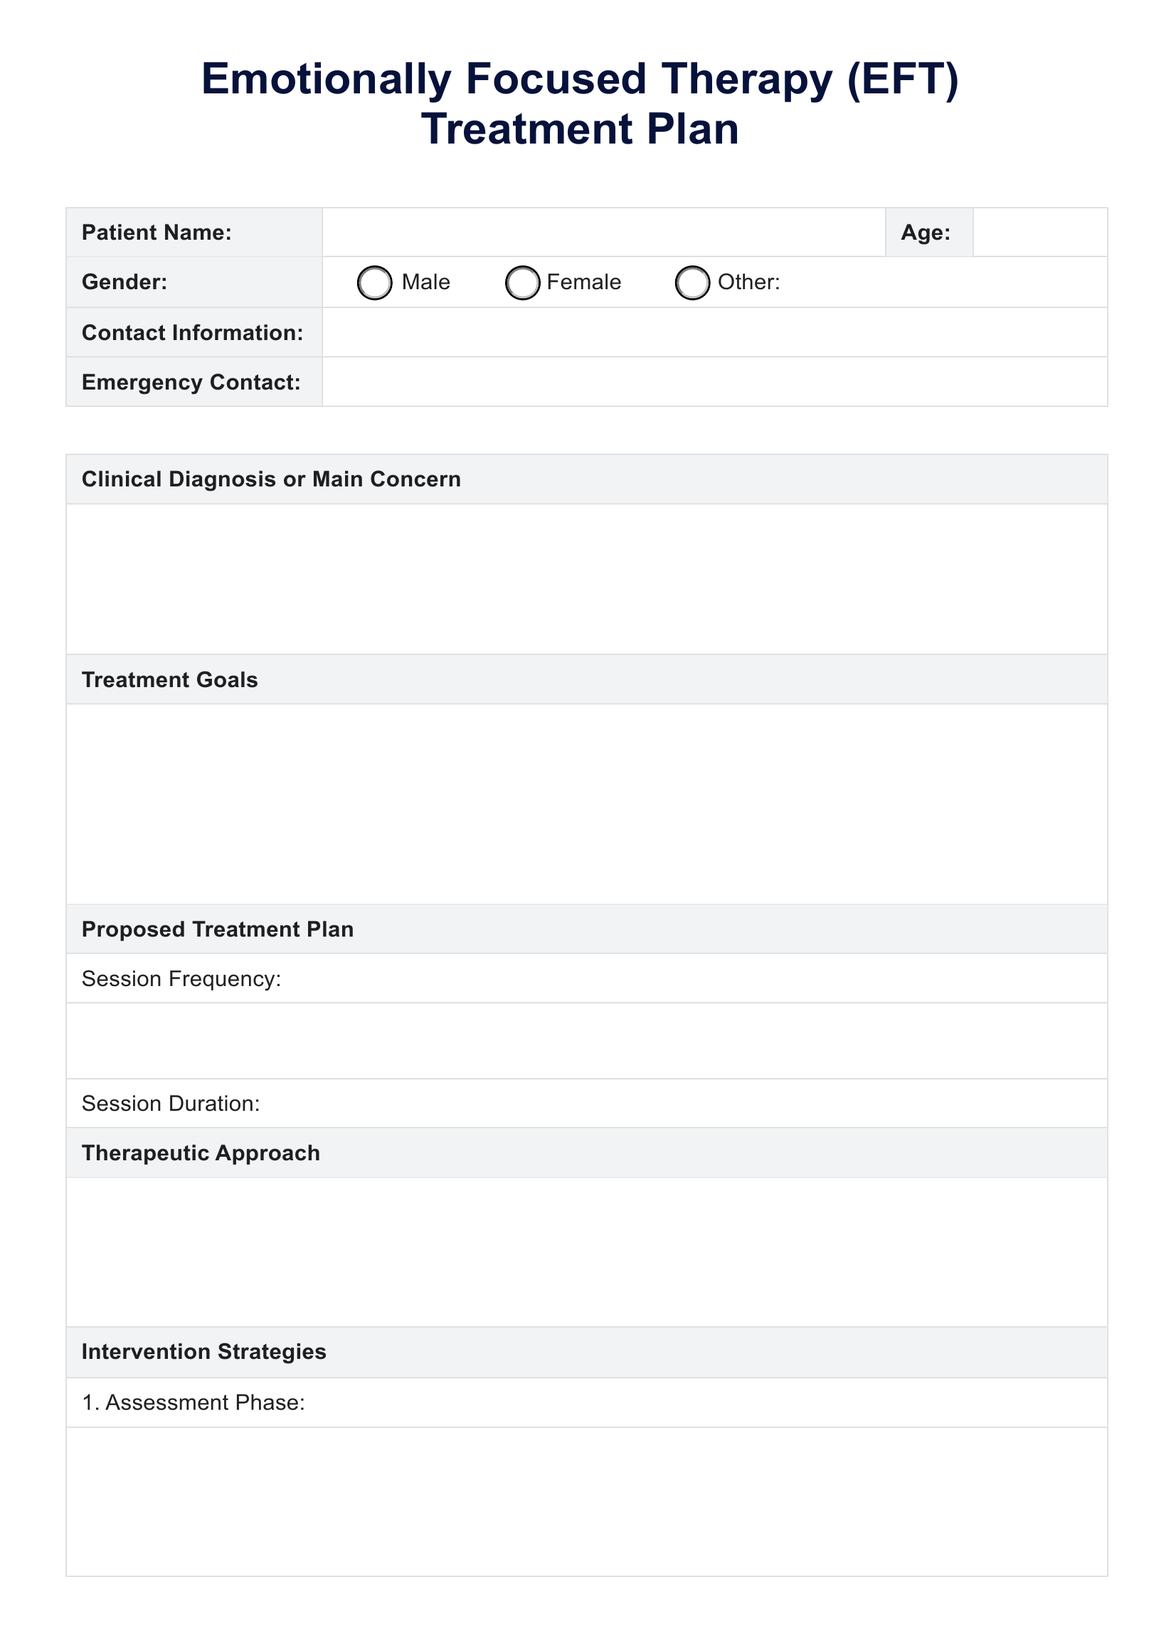 EFT Treatment Plan PDF Example